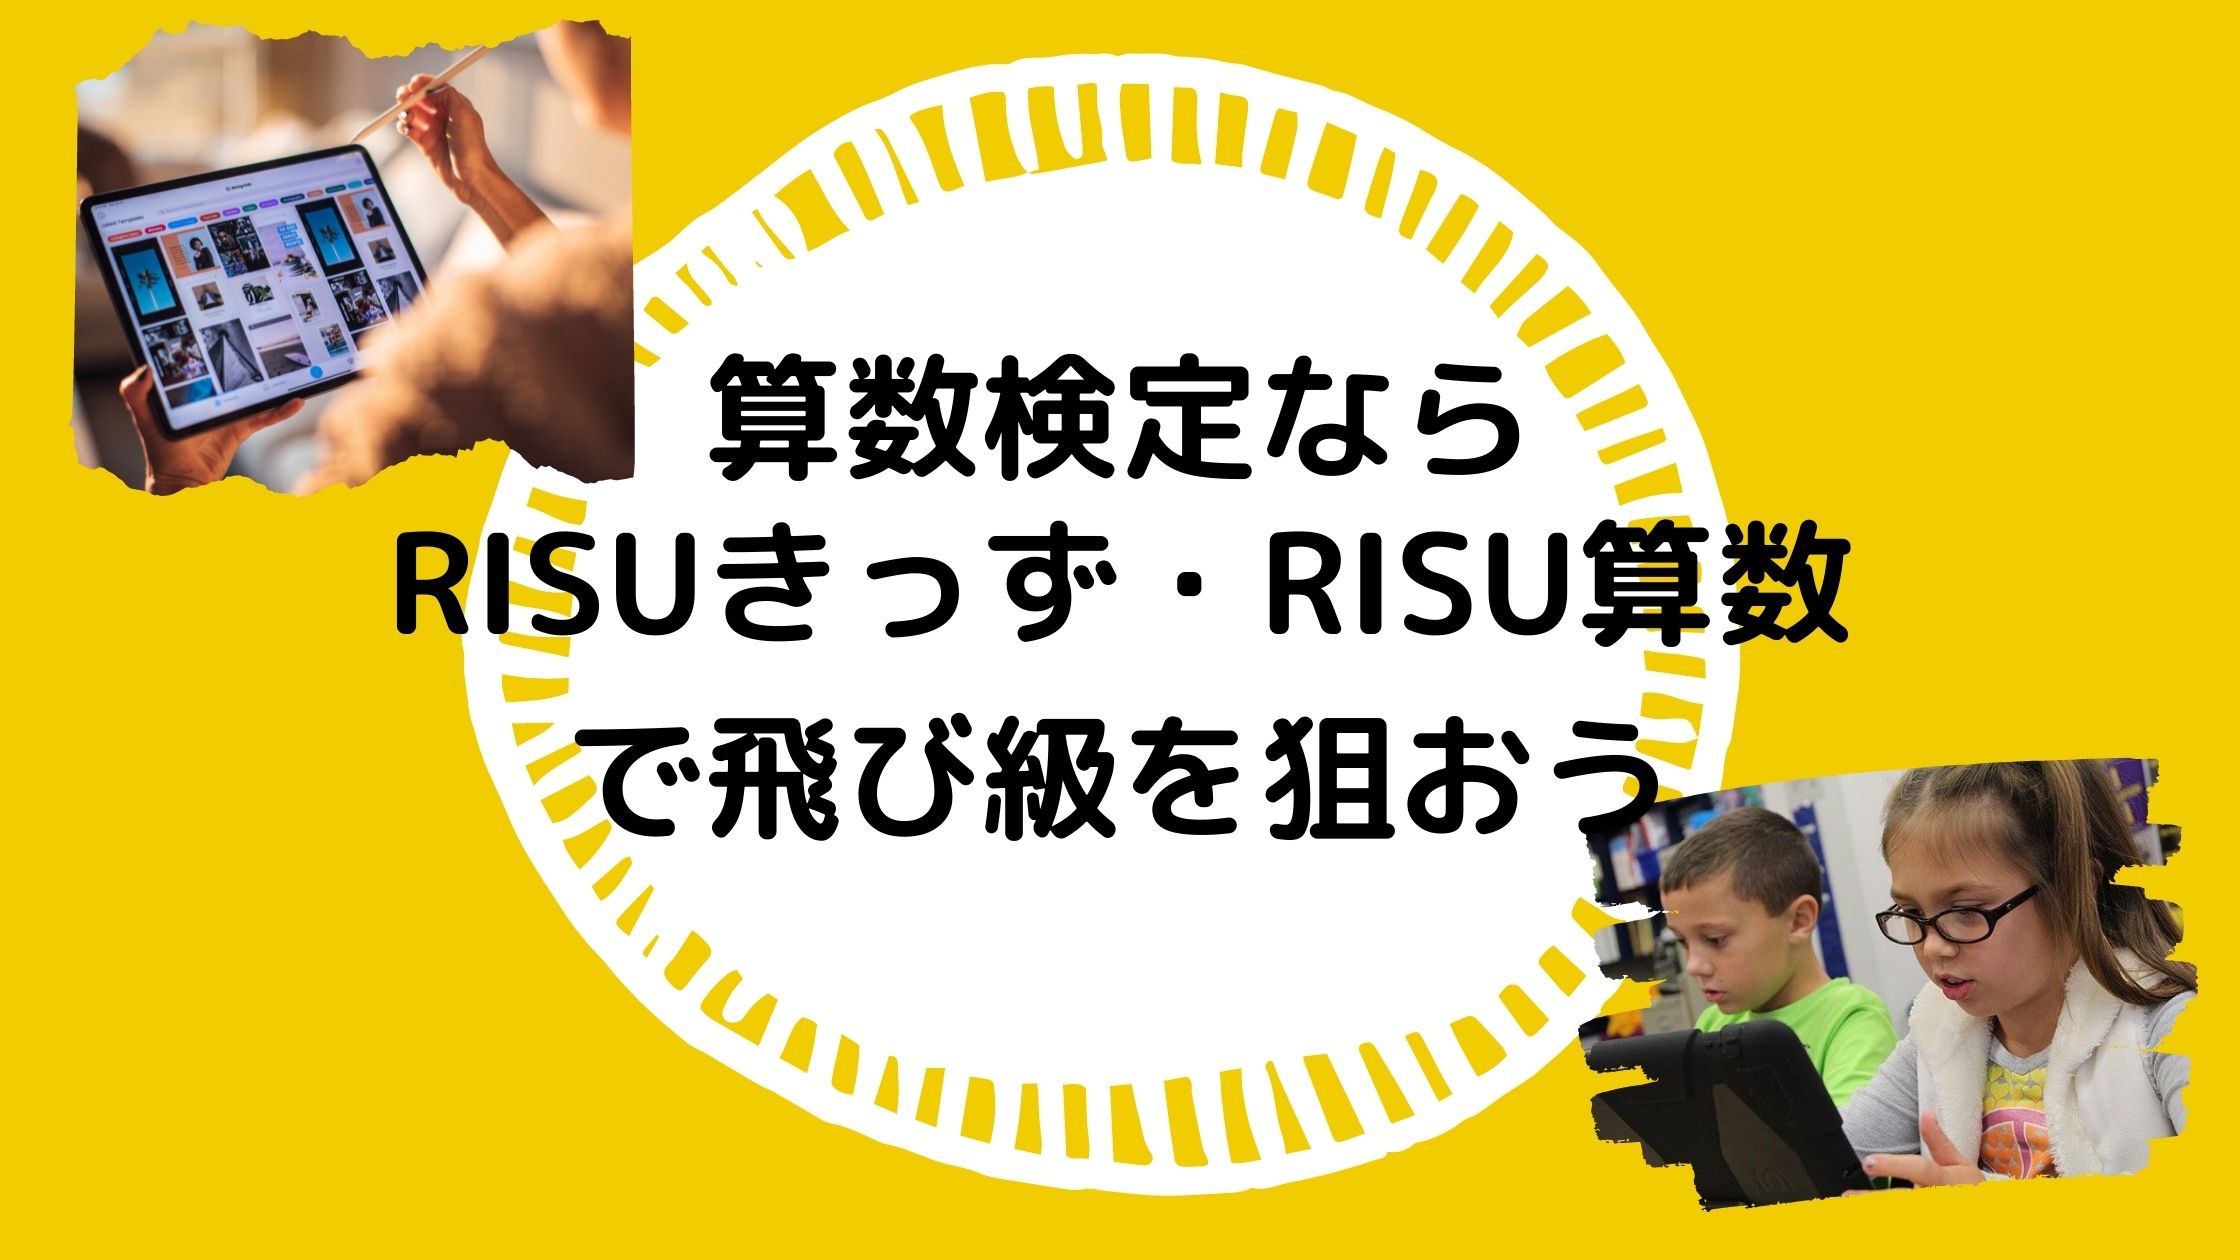 算数 risu RISU算数は高い？複雑な料金を自動計算！最安にする裏技あり